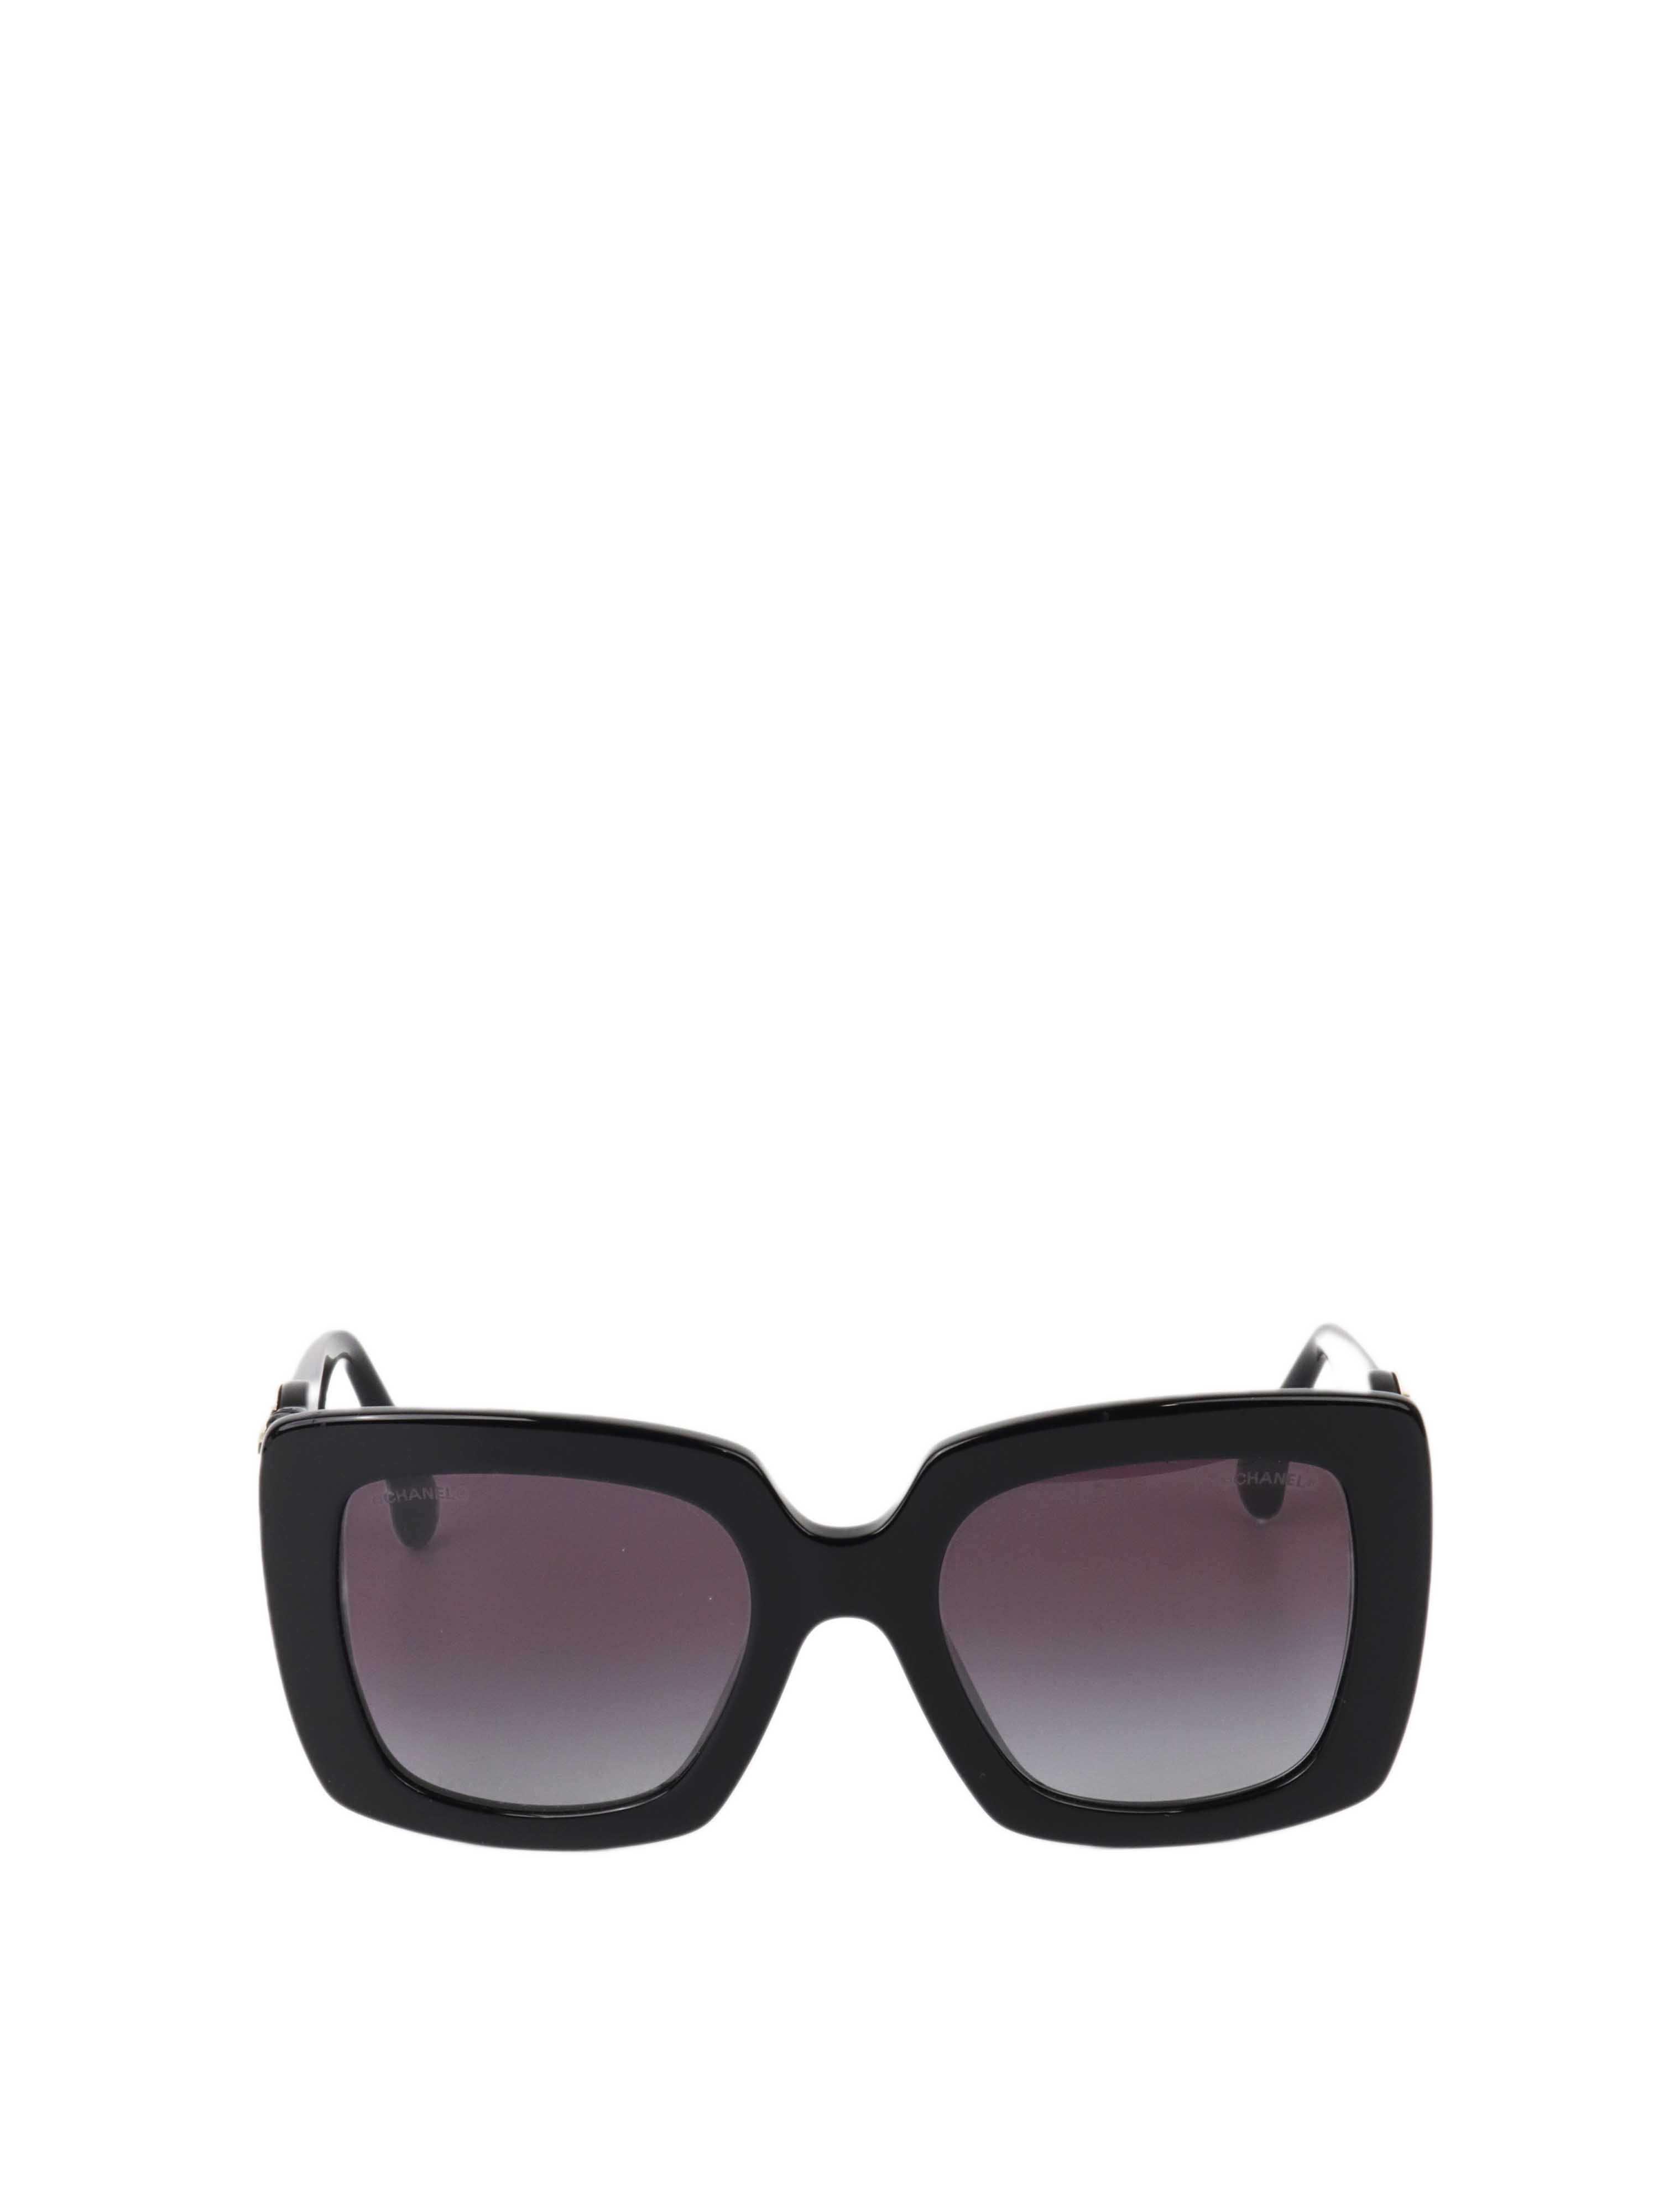 Chanel Square Sunglasses. – Votre Luxe